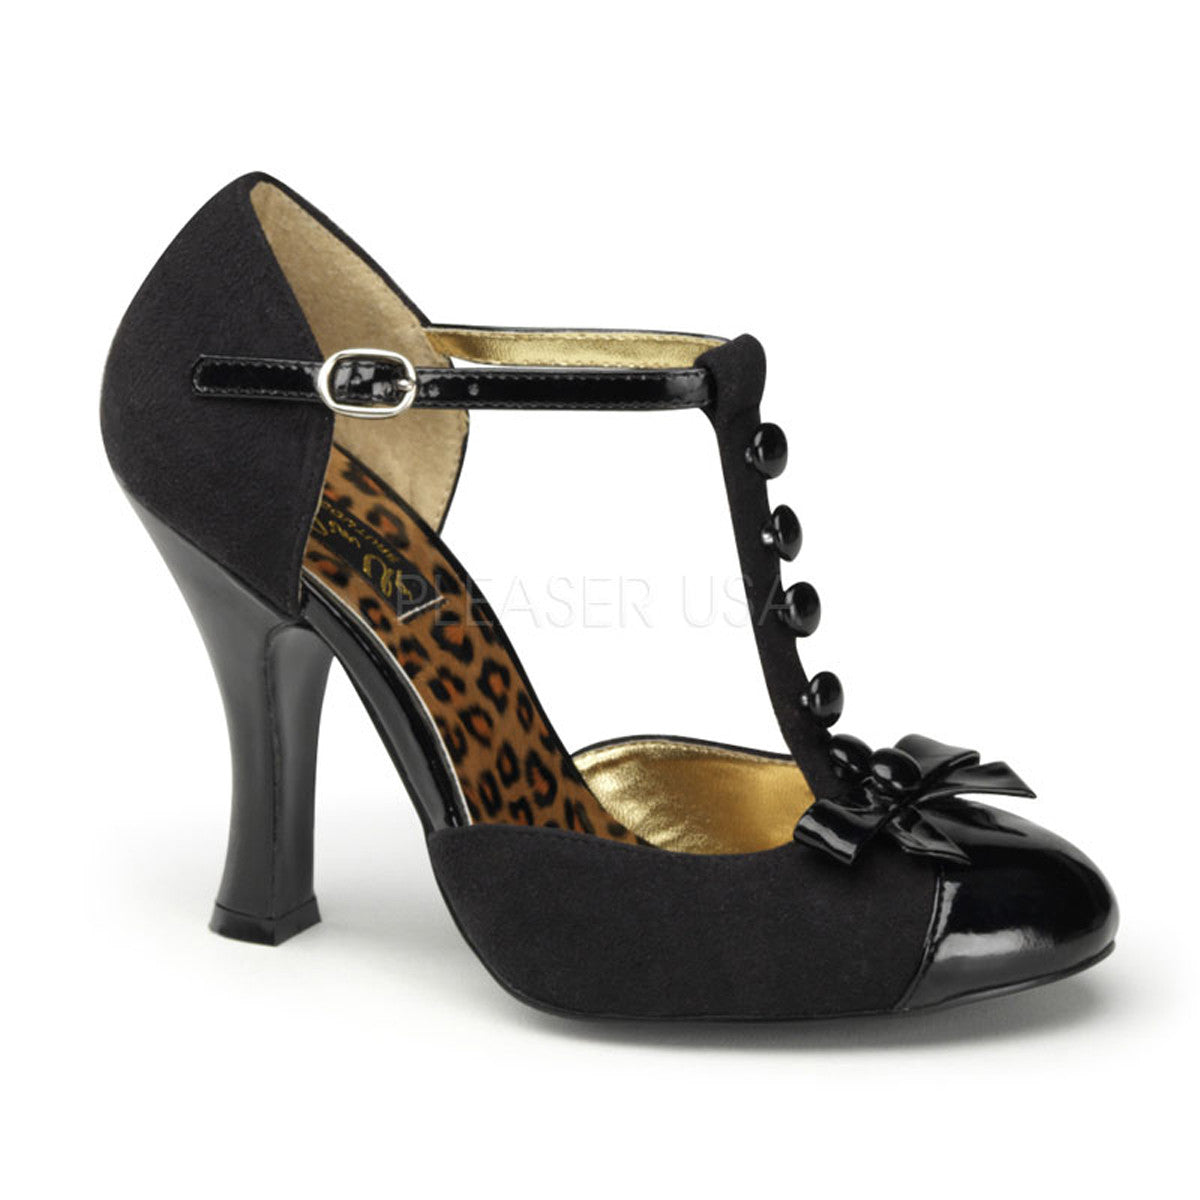 Pin Up Couture SMITTEN-10 Black M. Suede-Black Patent T-Strap D'orsay Pumps - Shoecup.com - 1